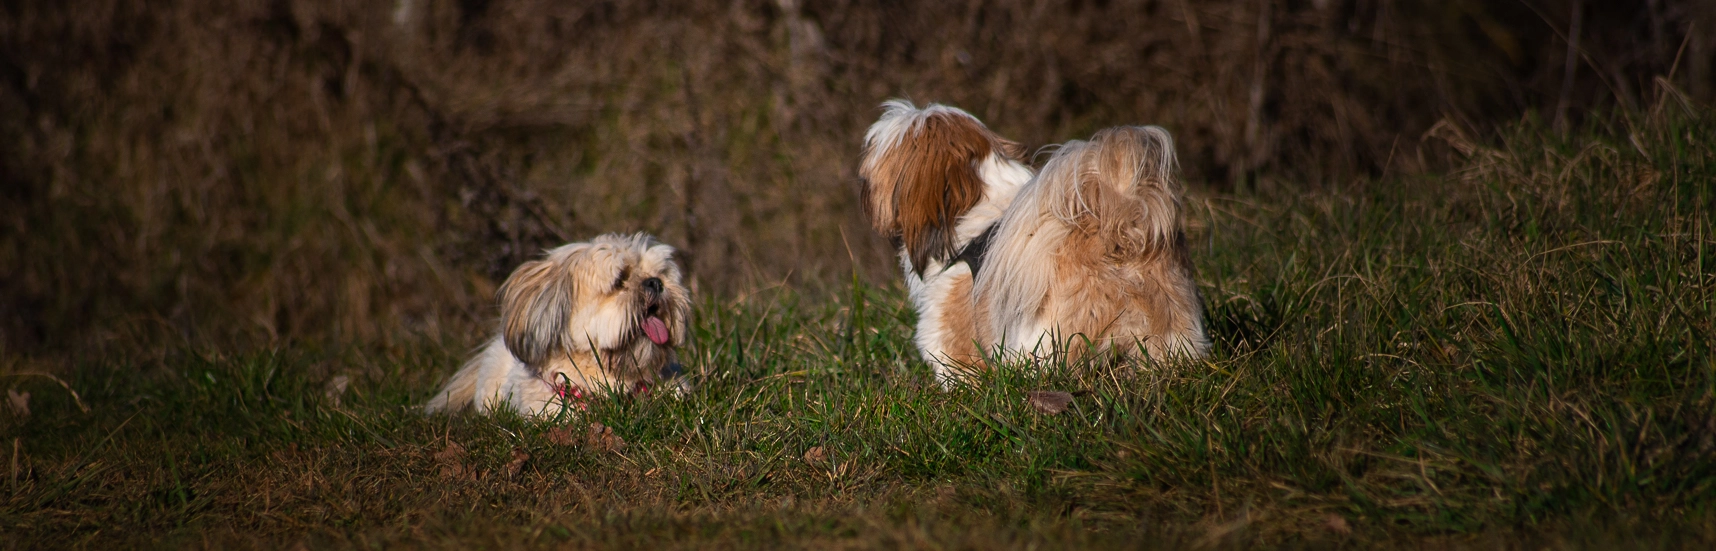 Photographie de deux chiens dans l'herbe lors d'une promenade